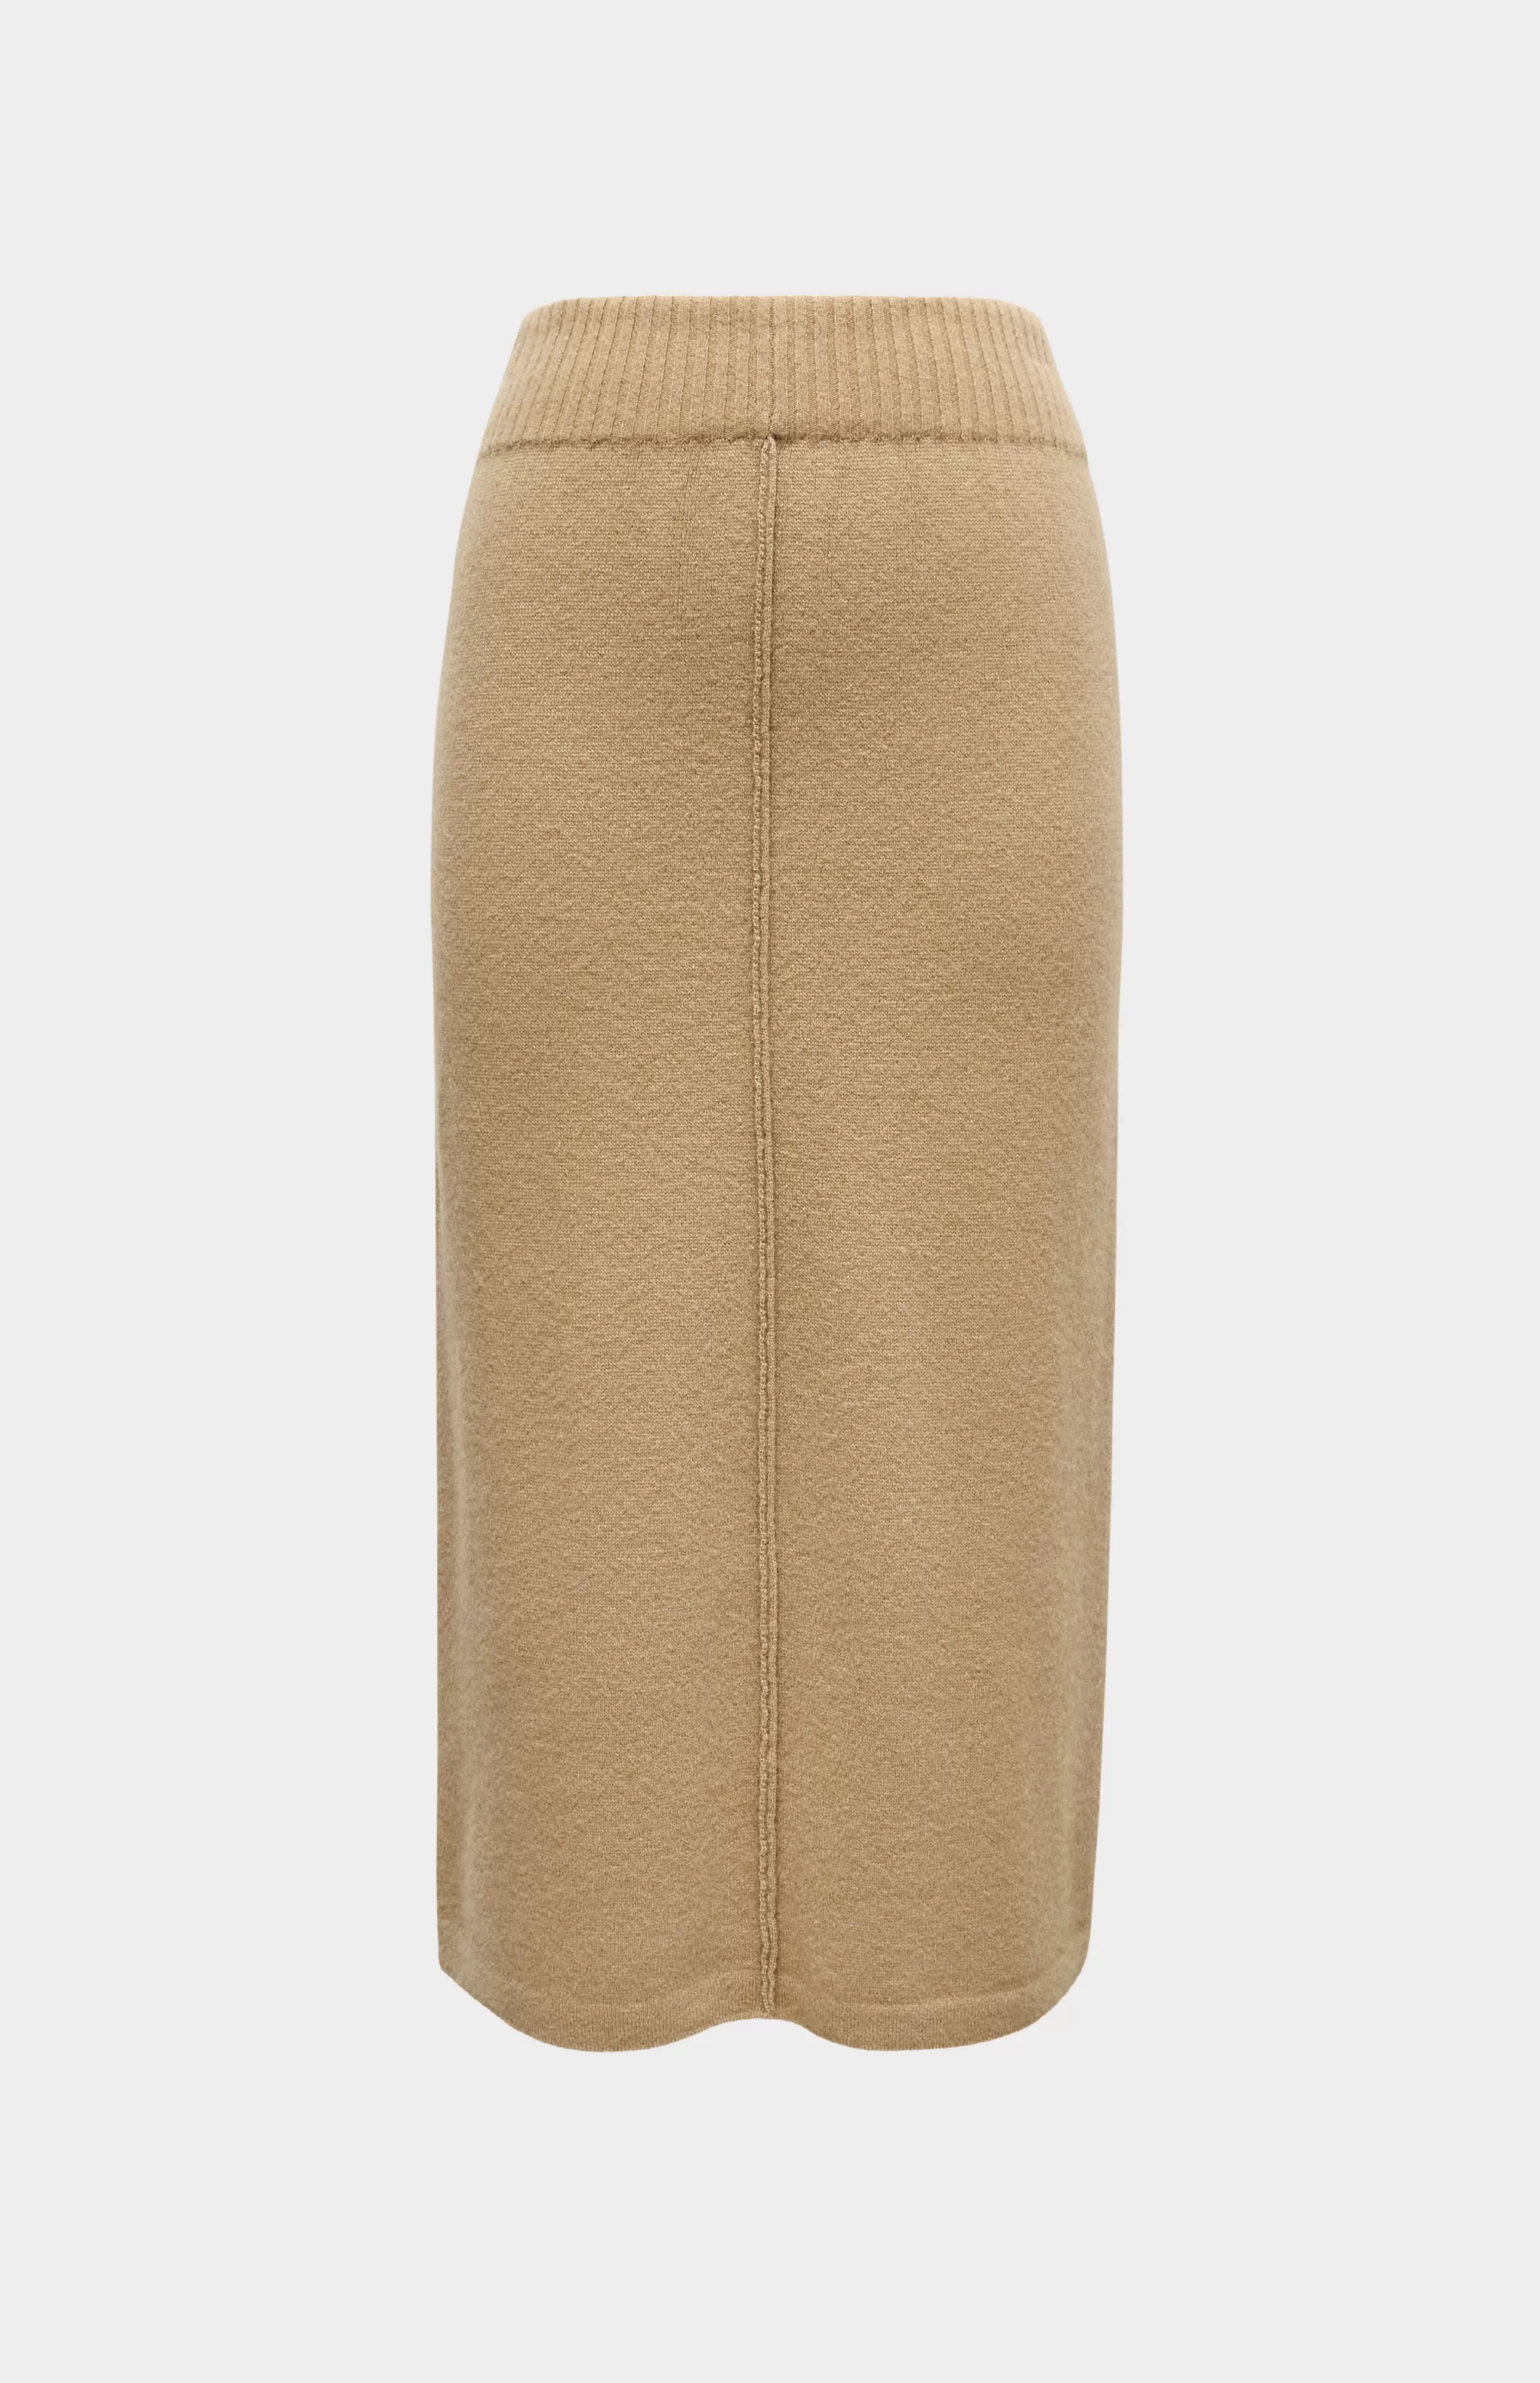 Cheap Cashmere Blend Pencil Skirt In Camel Men/Women Best Sellers